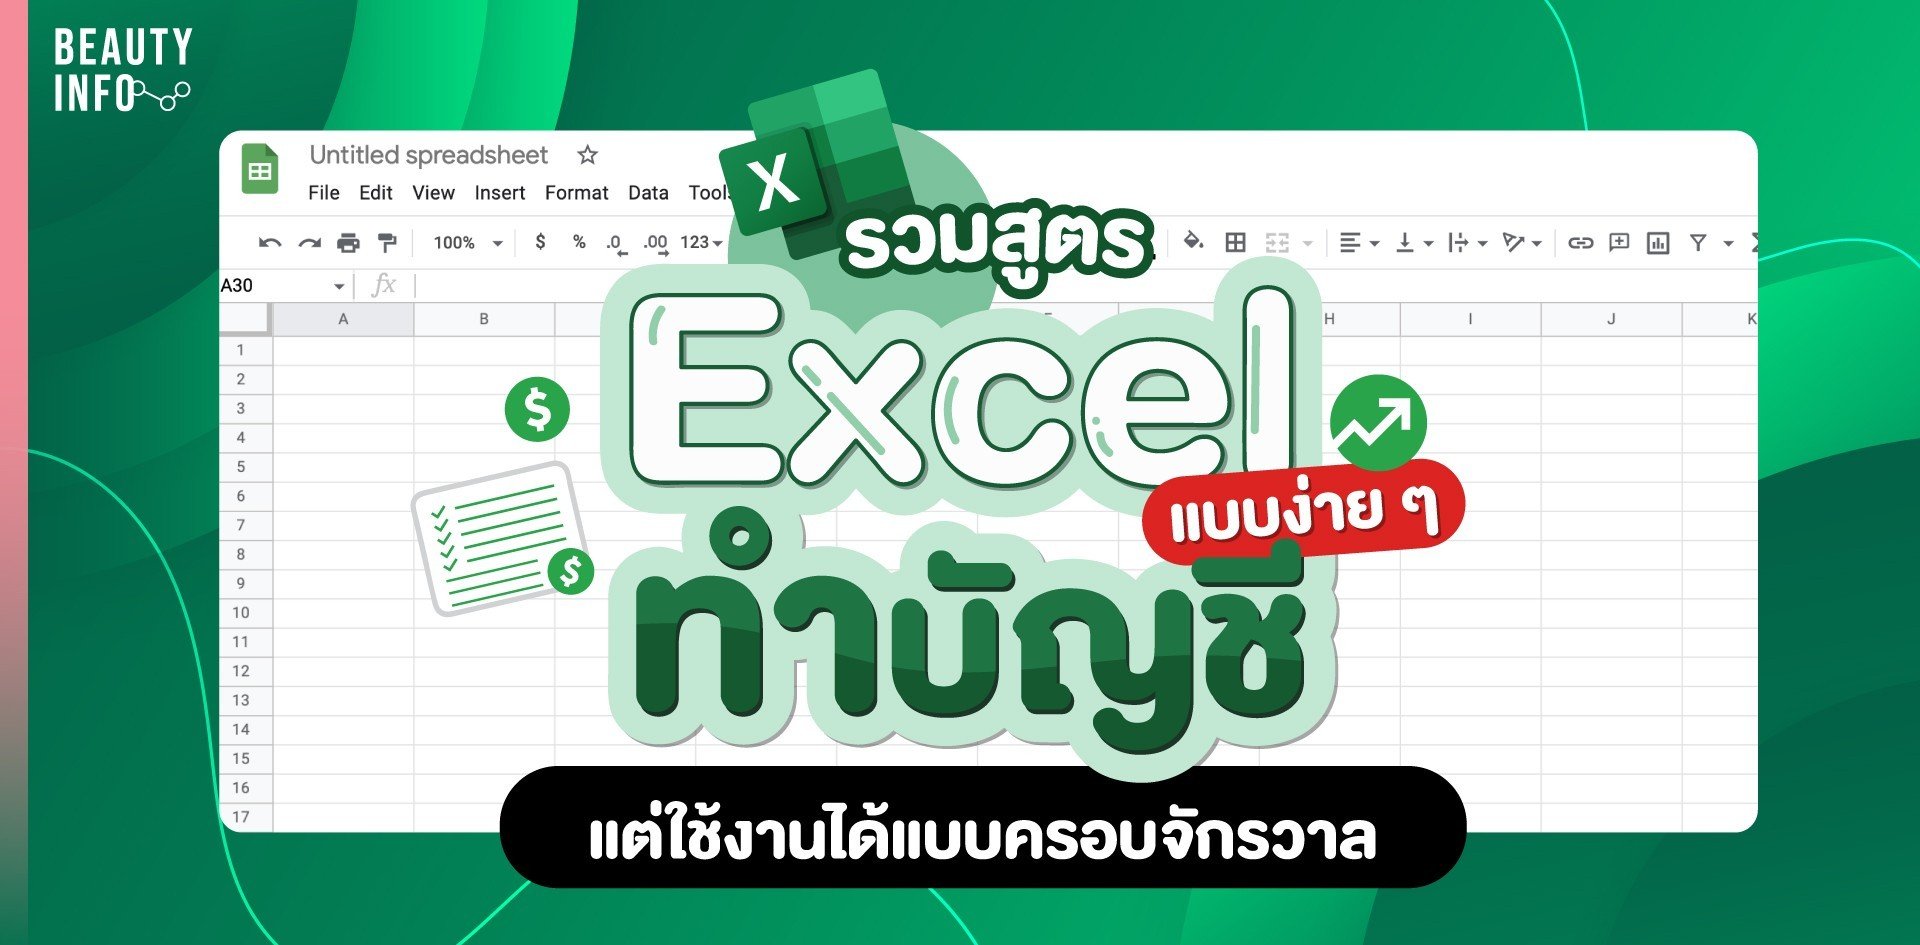 รวมสูตร Excel ทำบัญชีแบบง่าย ๆ แต่ใช้งานได้แบบครอบจักรวาล